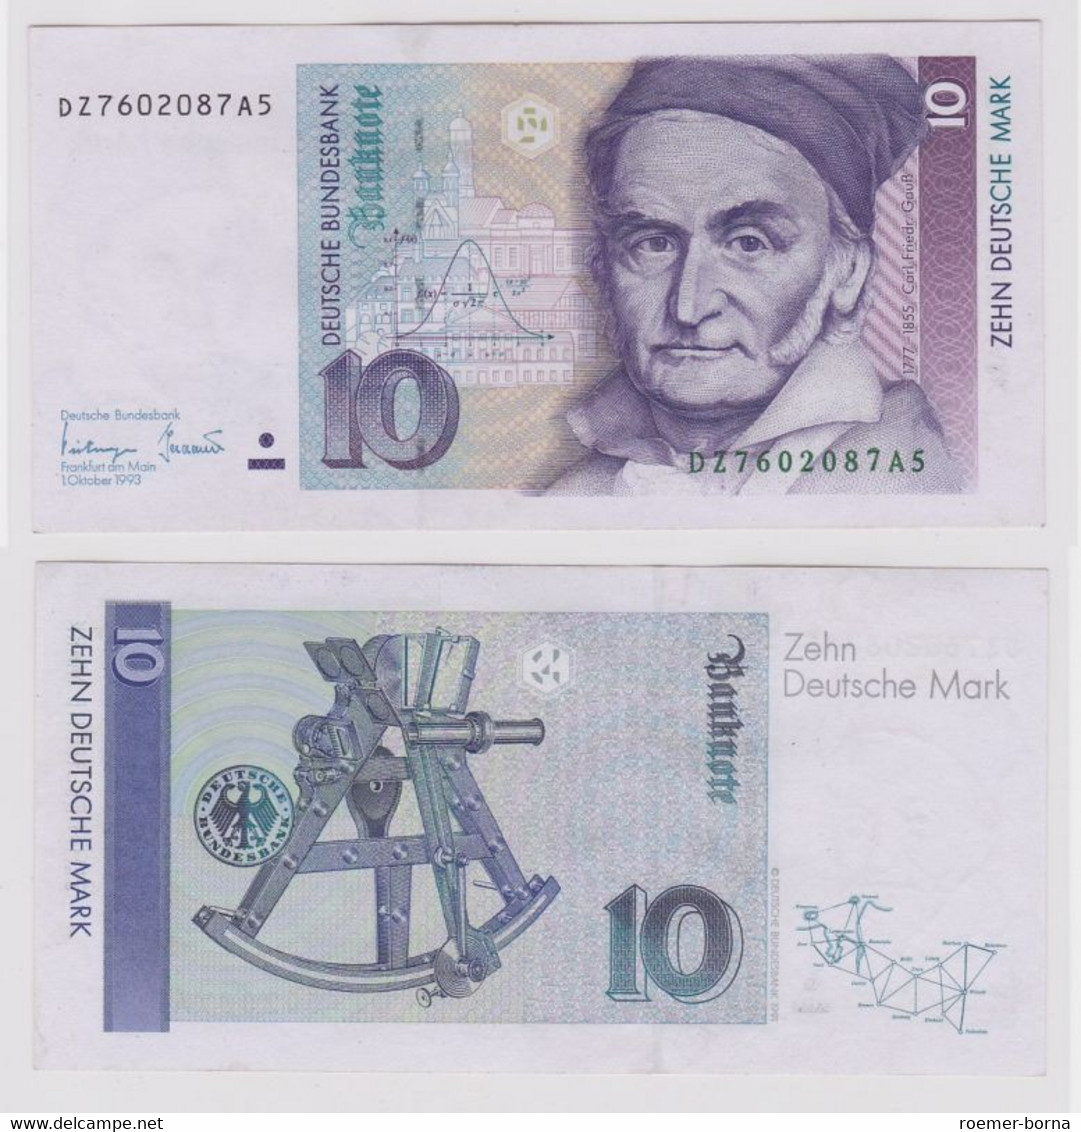 T146575 Banknote 10 DM Deutsche Mark Ro. 303a Schein 1.Okt. 1993 KN DZ 7602087A5 - 10 Deutsche Mark